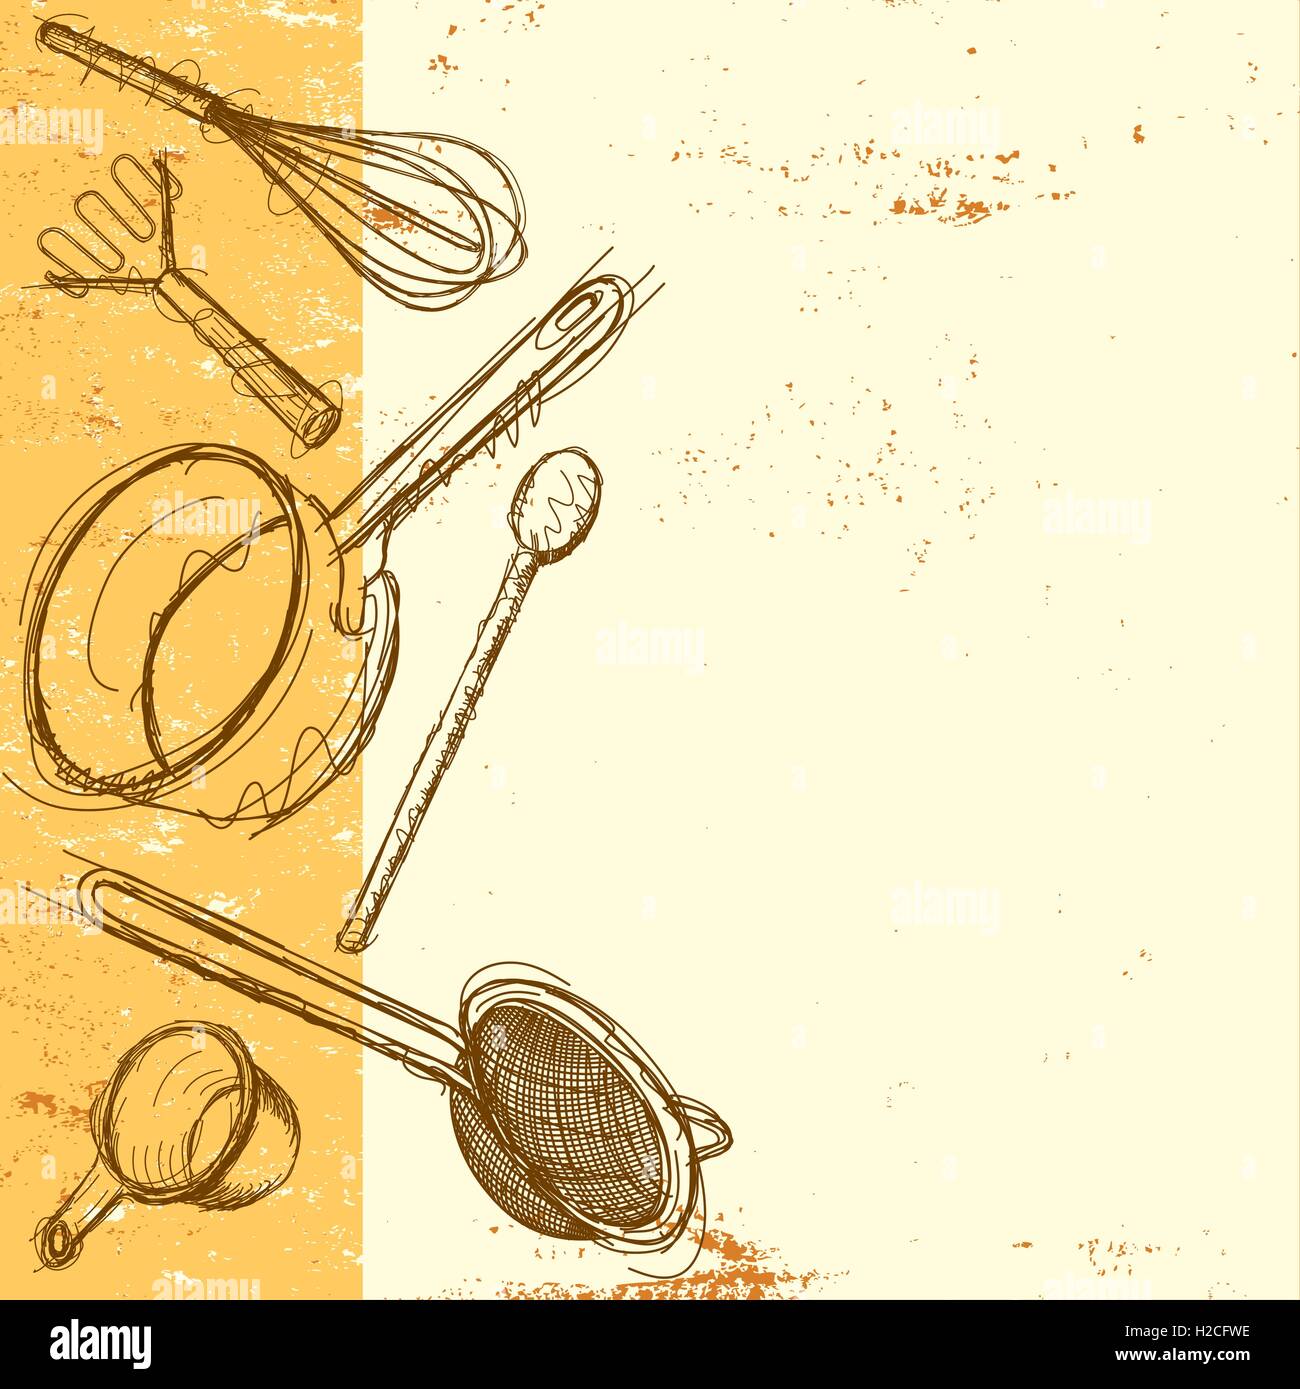 Kochen Utensil Hintergrund Sketchy handgezeichnete Küchenutensilien vor einem abstrakten Hintergrund mit Textfreiraum. Stock Vektor